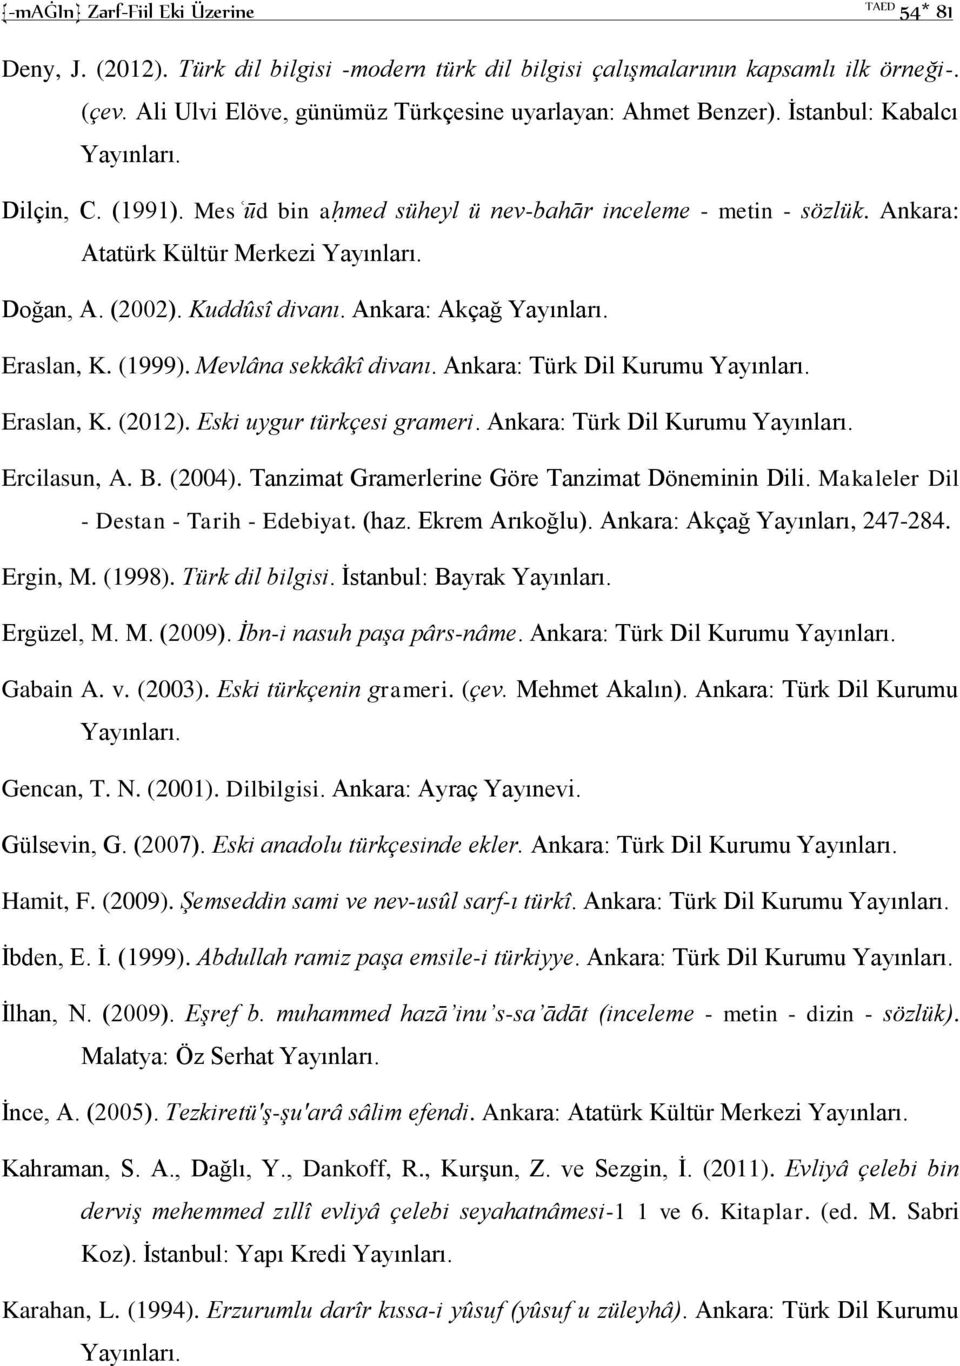 Ankara: Atatürk Kültür Merkezi Doğan, A. (2002). Kuddûsî divanı. Ankara: Akçağ Eraslan, K. (1999). Mevlâna sekkâkî divanı. Ankara: Türk Dil Kurumu Eraslan, K. (2012). Eski uygur türkçesi grameri.